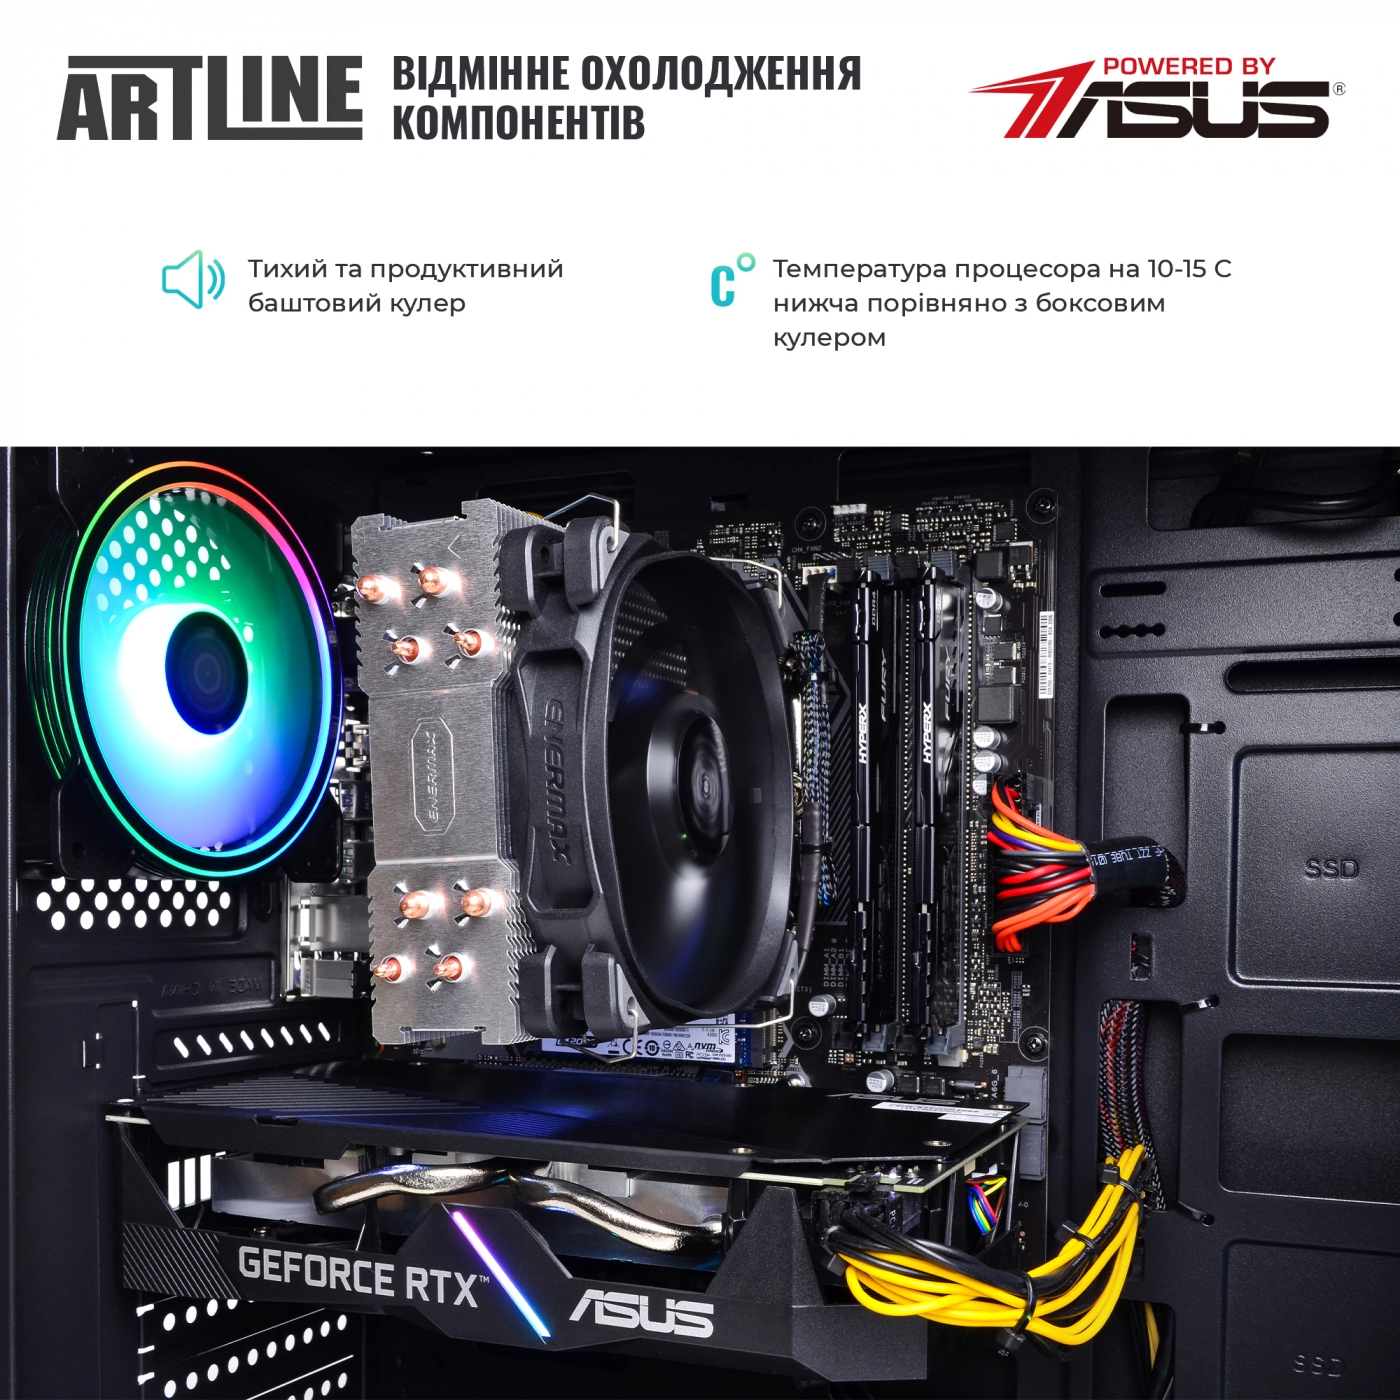 Купить Компьютер ARTLINE Gaming X56v24 - фото 7